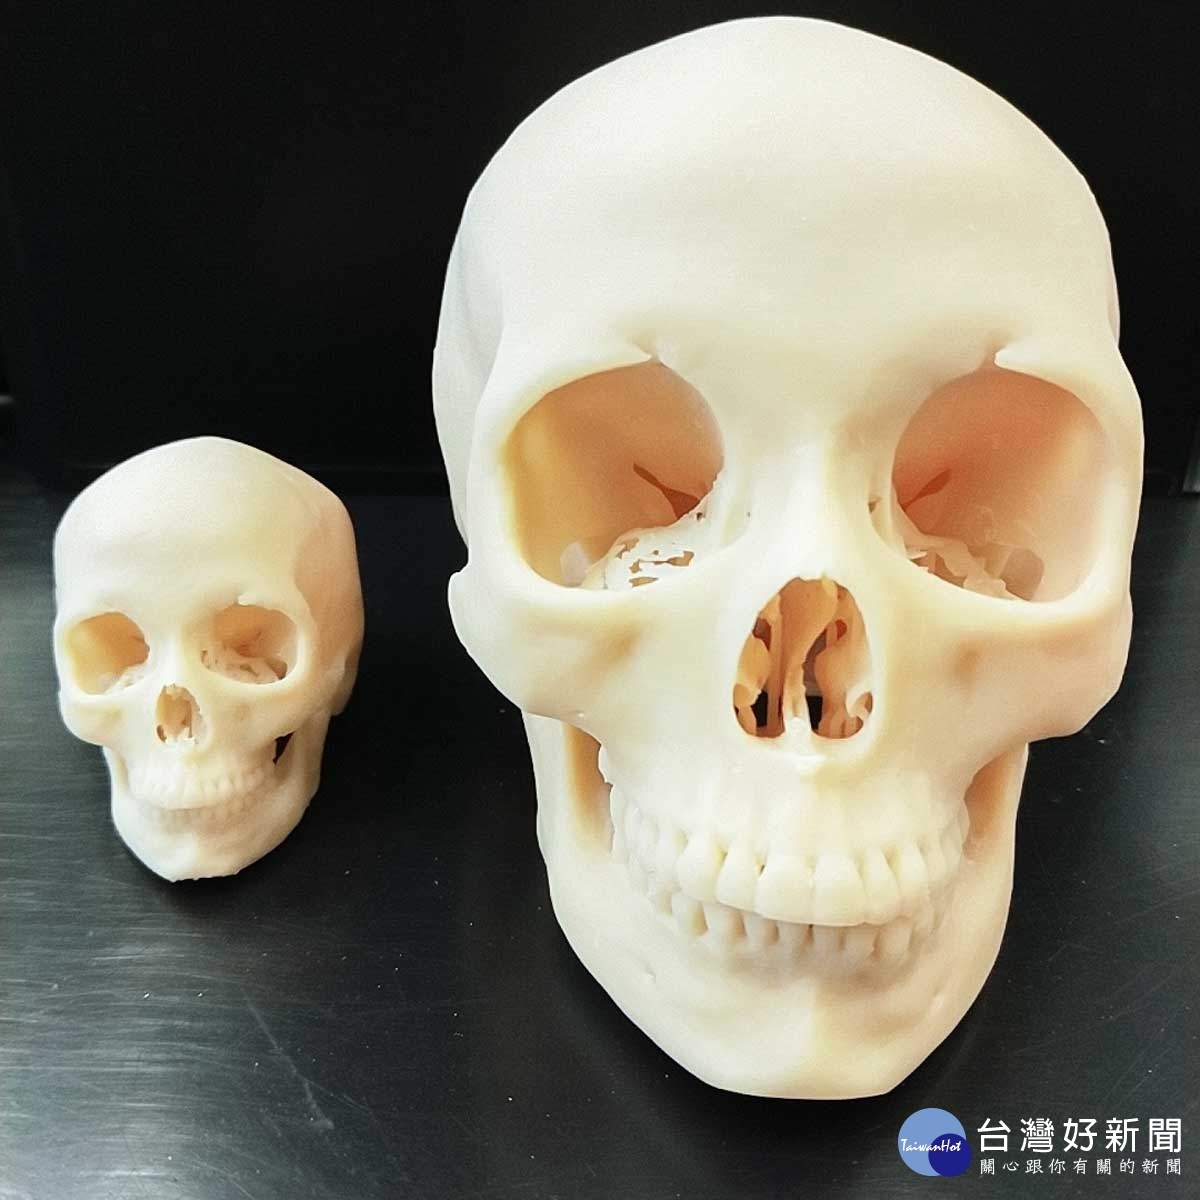 OMaker系統依照成像輸出30%（左）及66%（右）大小頭骨模型，細節依舊清楚呈現！